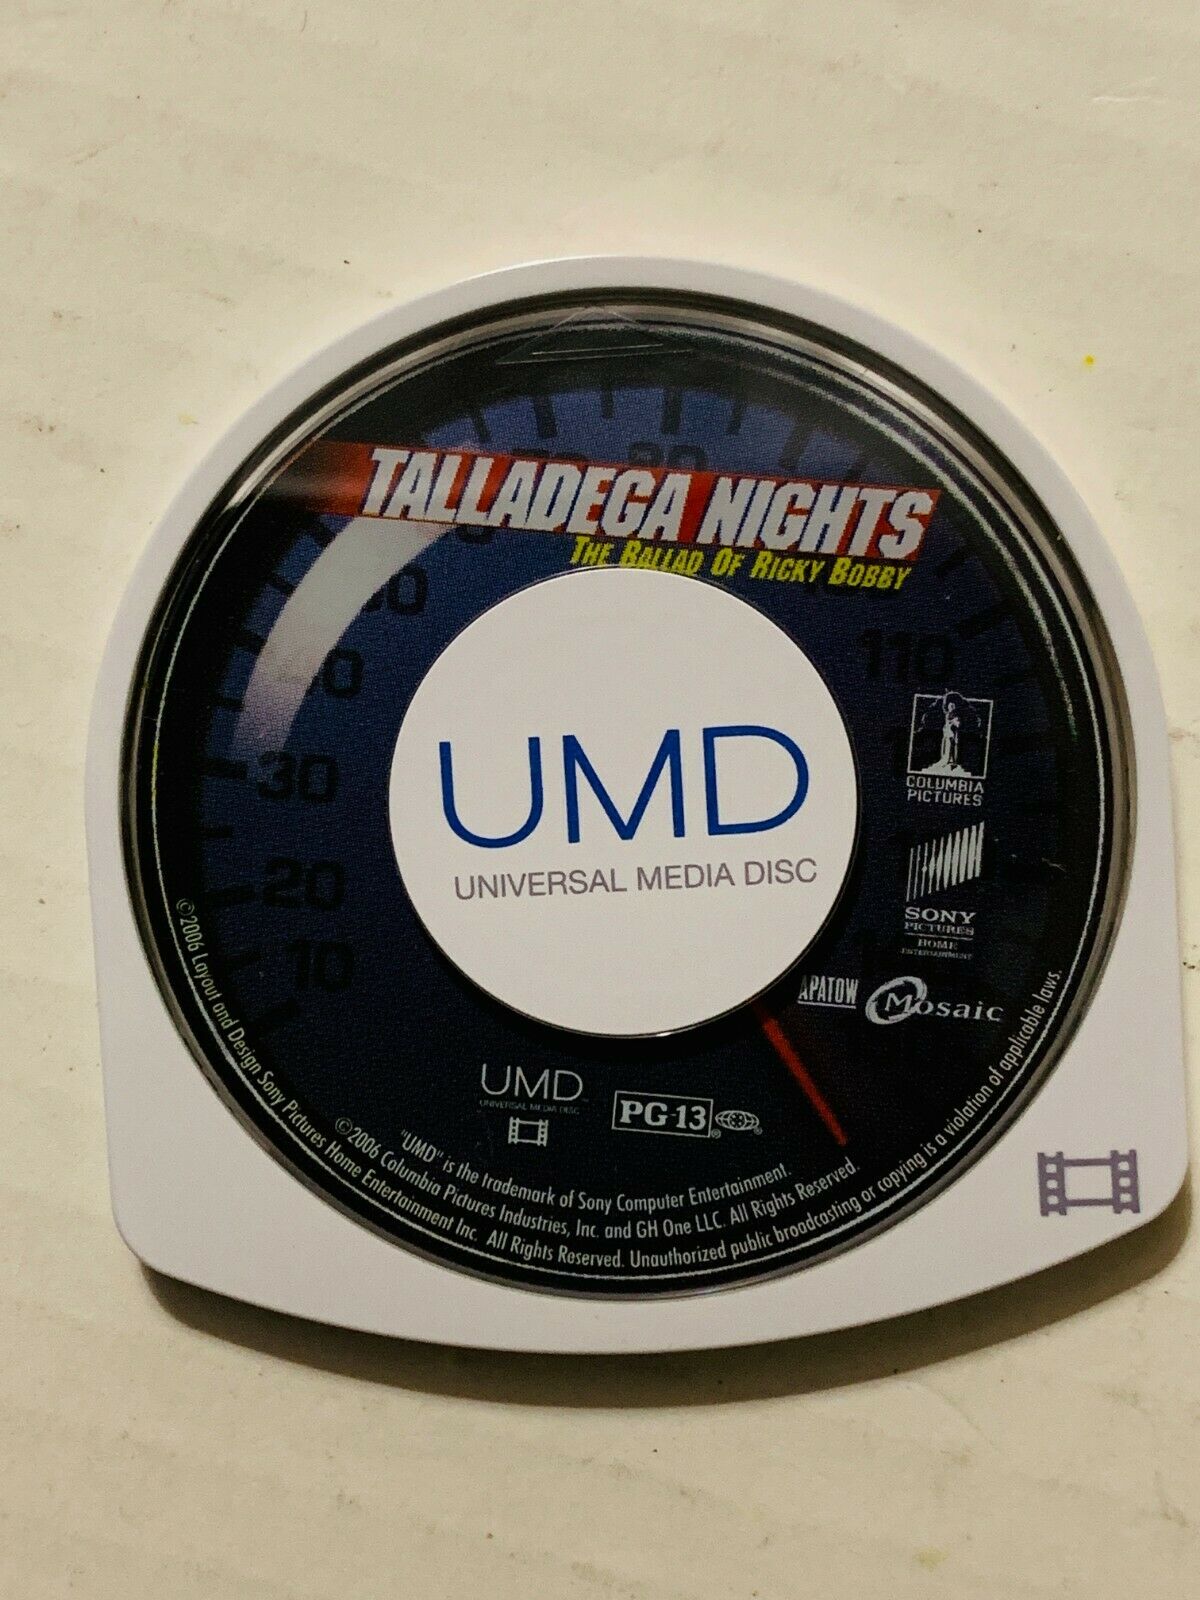 Talladega Nights (PSP UMD Video) - Darkside Records